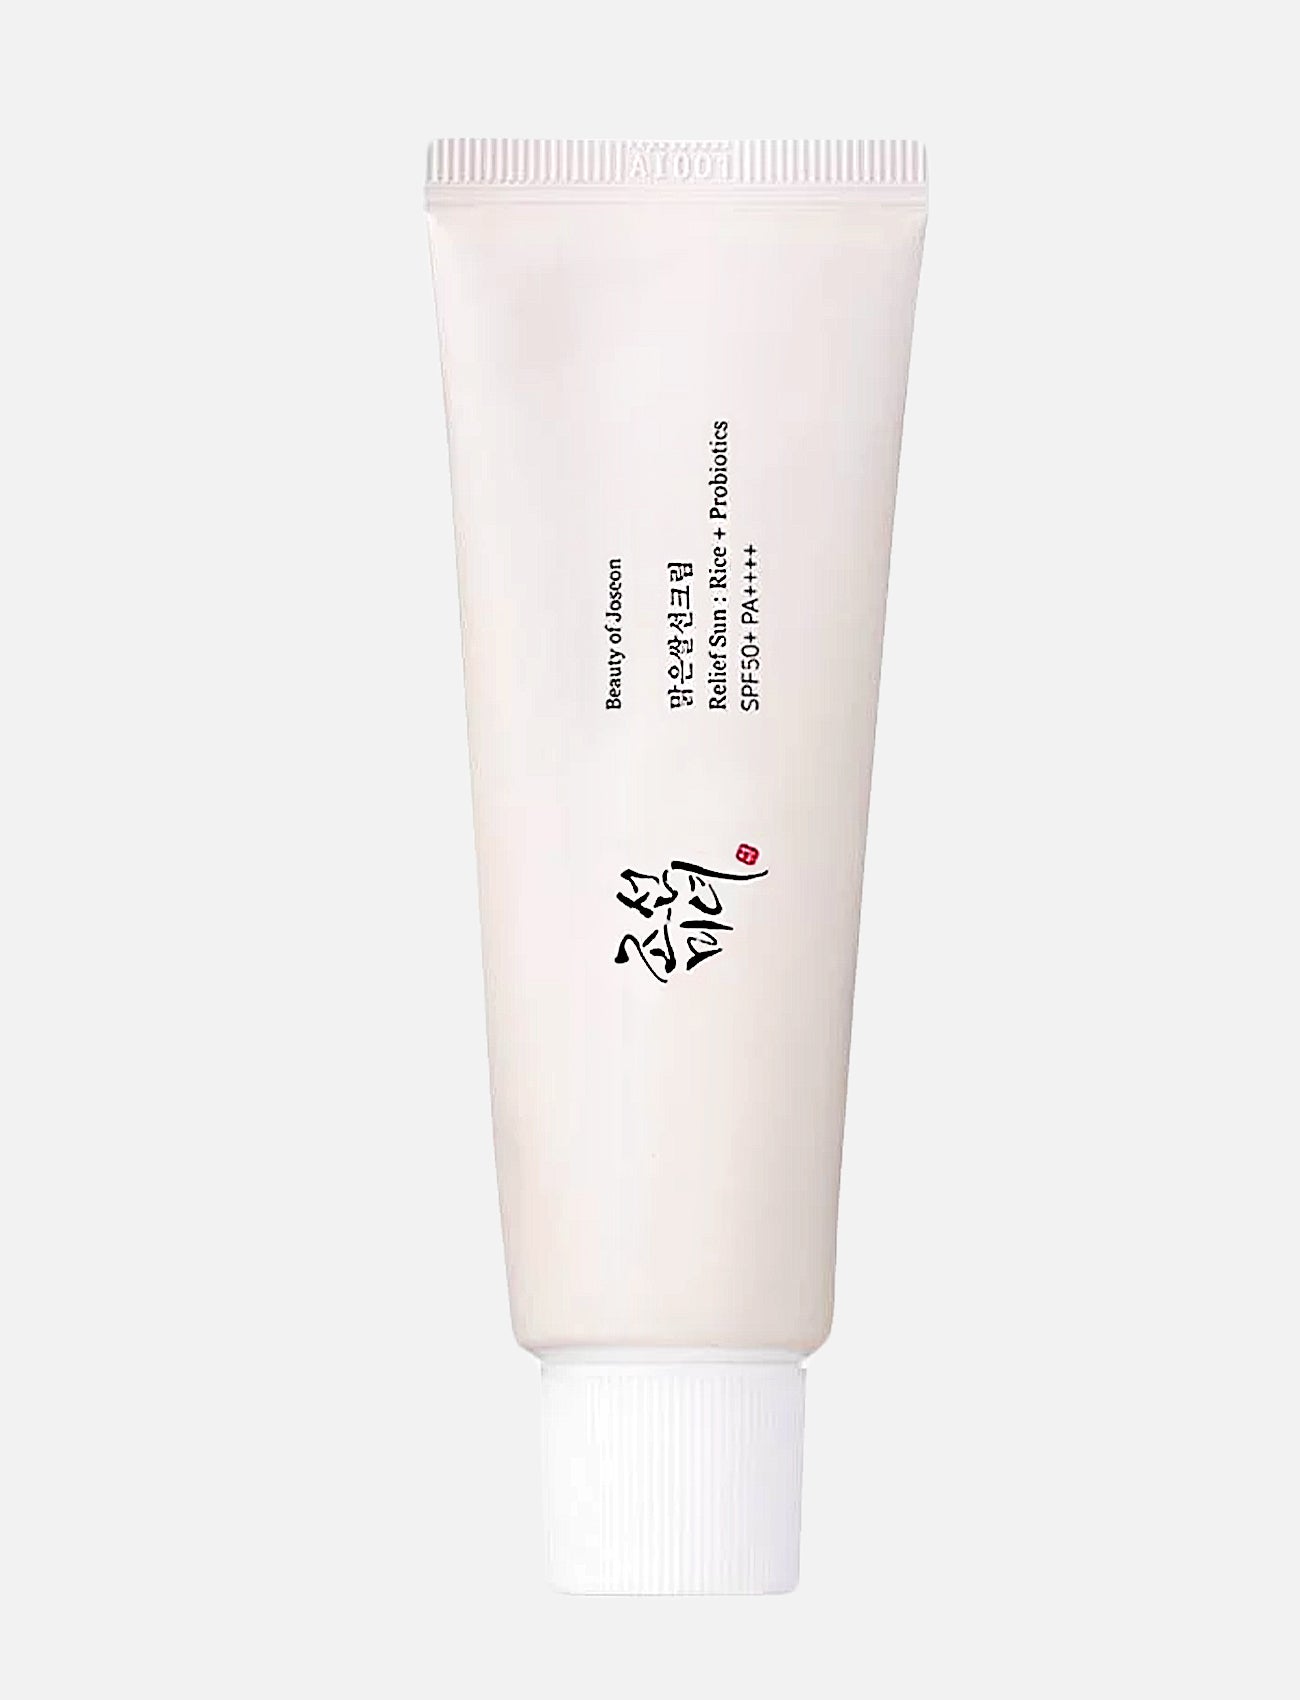 Der Beauty of Joseon Relief Sun Rice+ Probiotics Sunscreen vor hellgrauem Hintergrund.